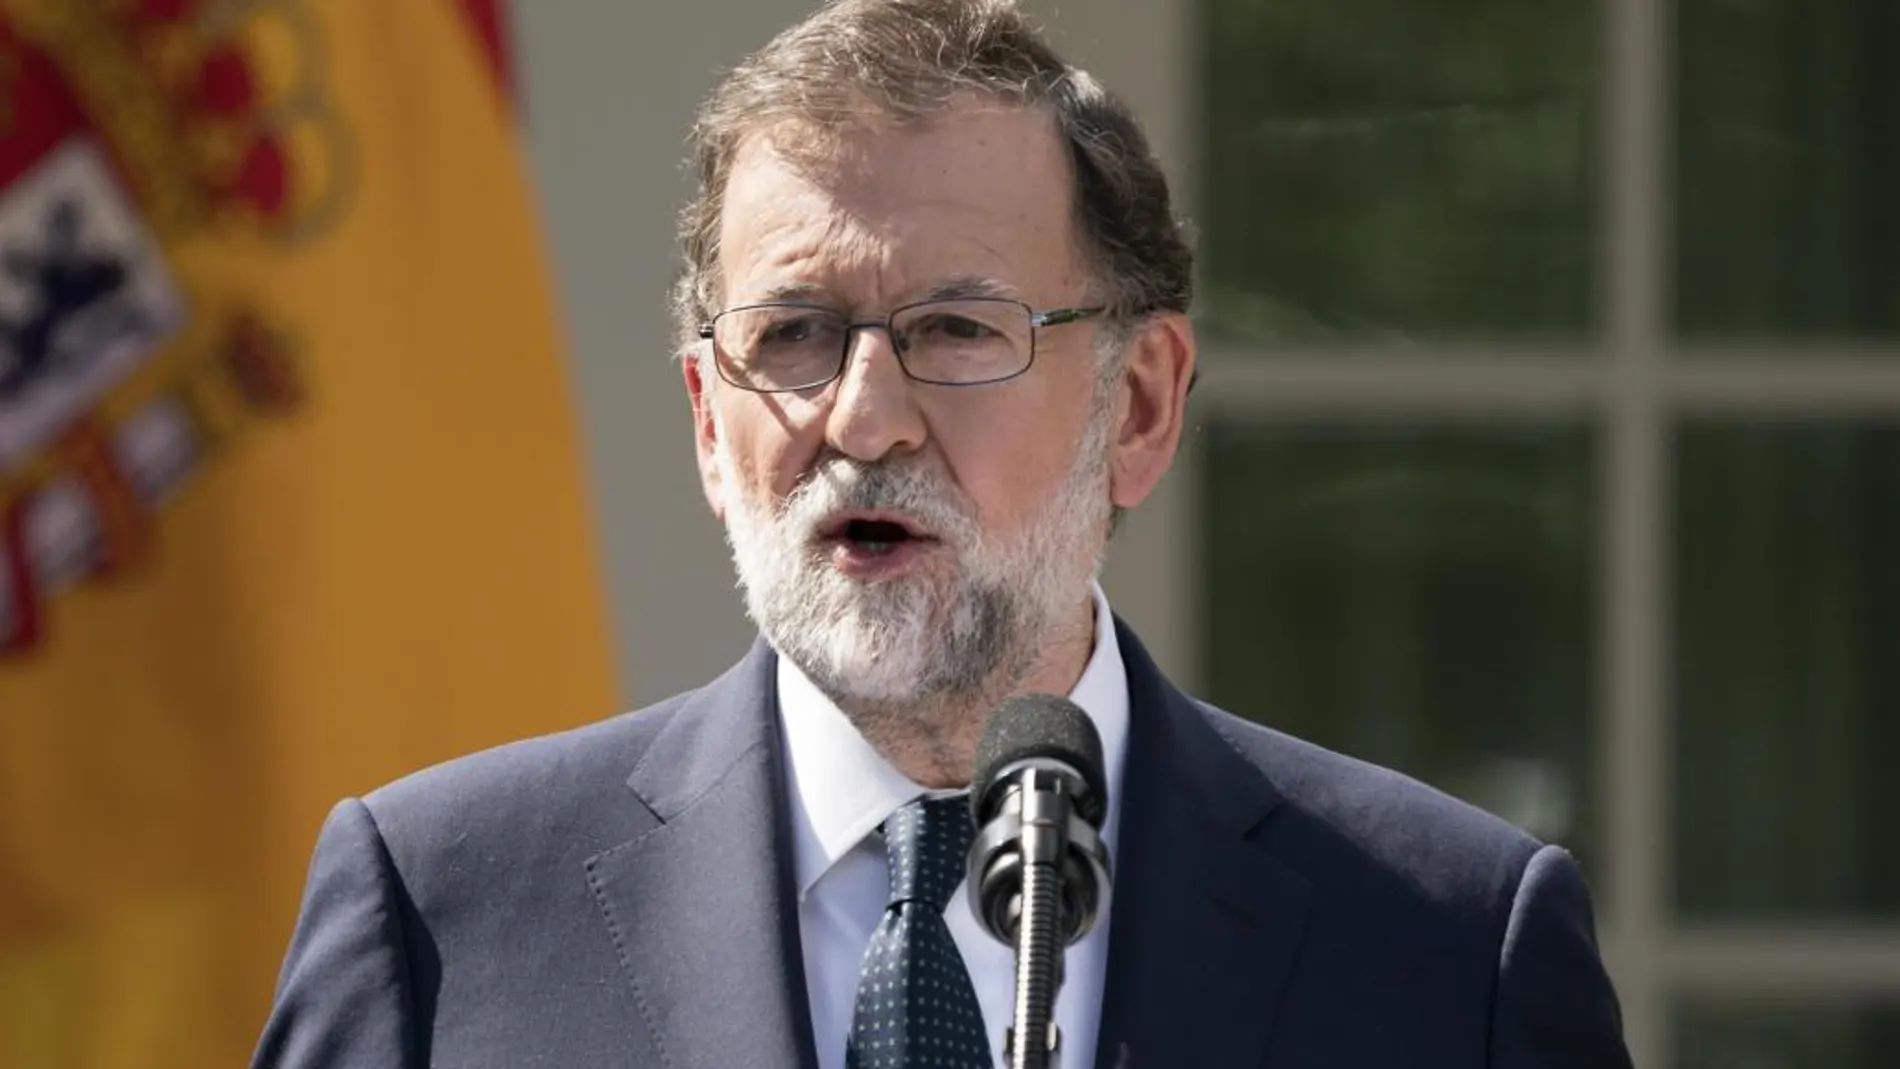 El presidente del Gobierno español, Mariano Rajoy, durante su visita a la Casa Blanca esta semana.